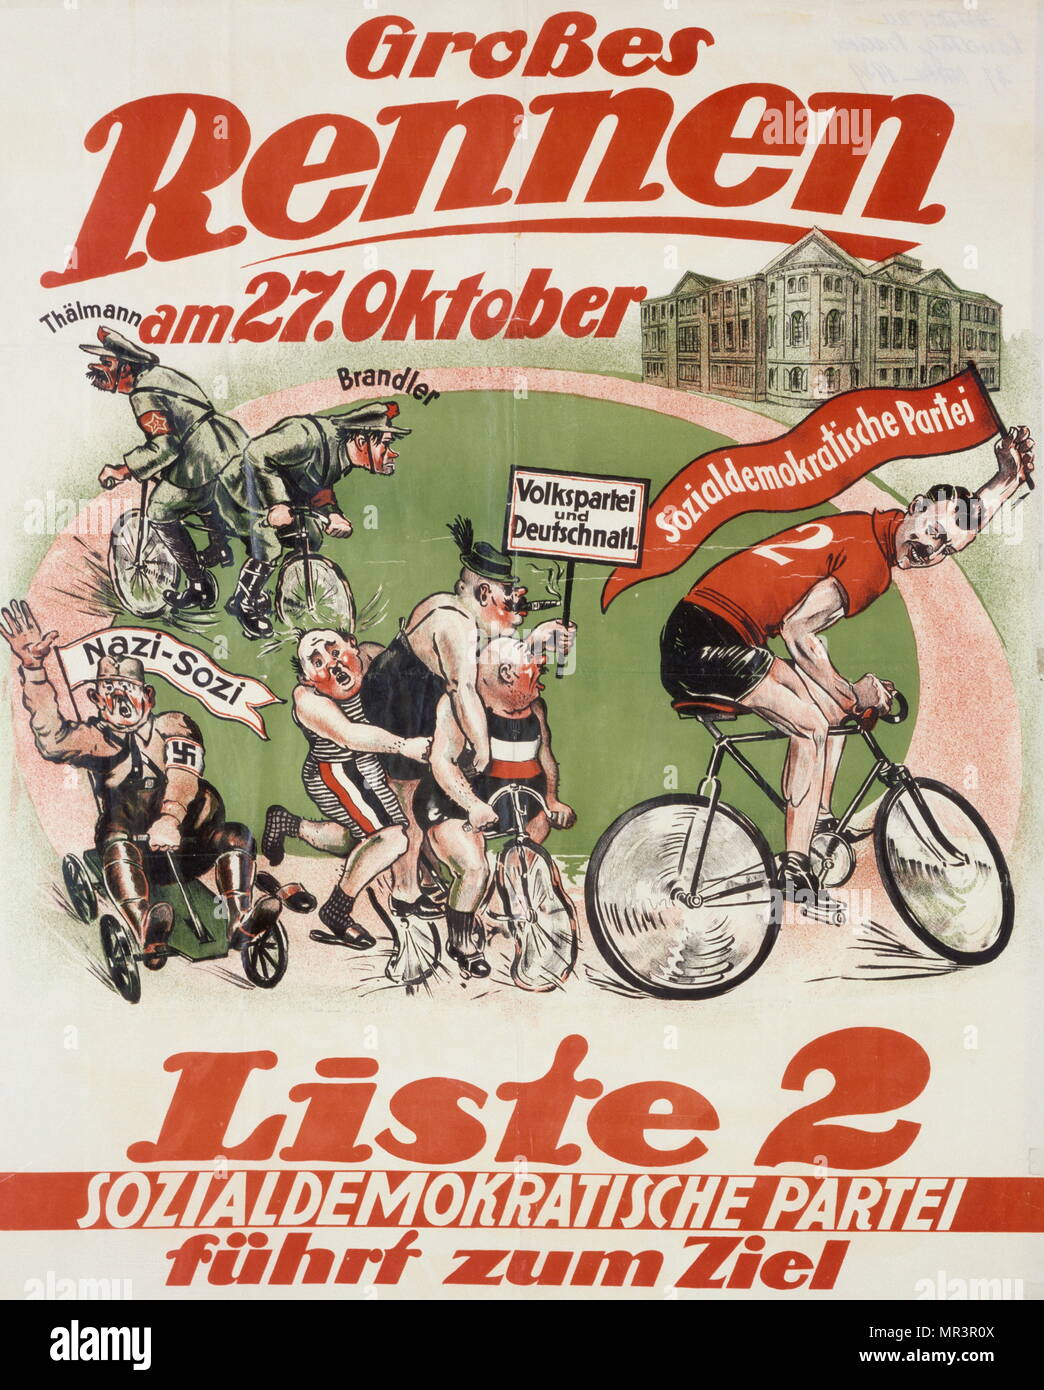 Parti social-démocrate allemand (SPD), (anti-nazi), la propagande affiche de l'élection régionale de Baden en octobre 1929 Banque D'Images